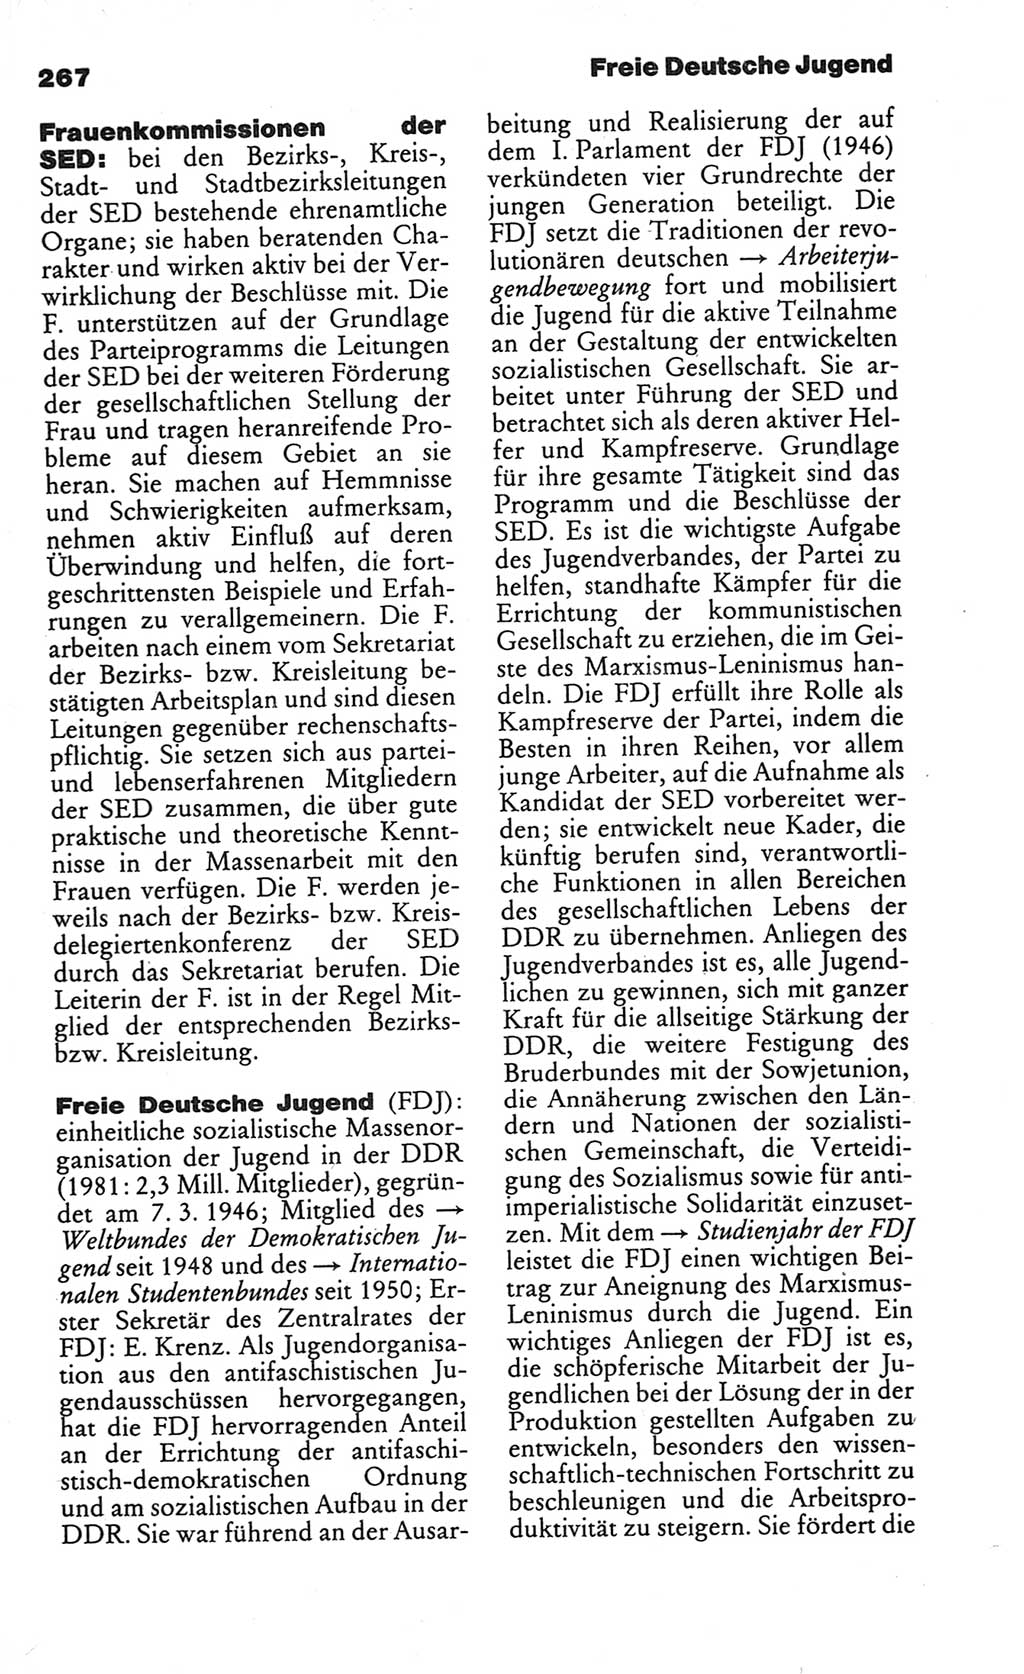 Kleines politisches Wörterbuch [Deutsche Demokratische Republik (DDR)] 1986, Seite 267 (Kl. pol. Wb. DDR 1986, S. 267)